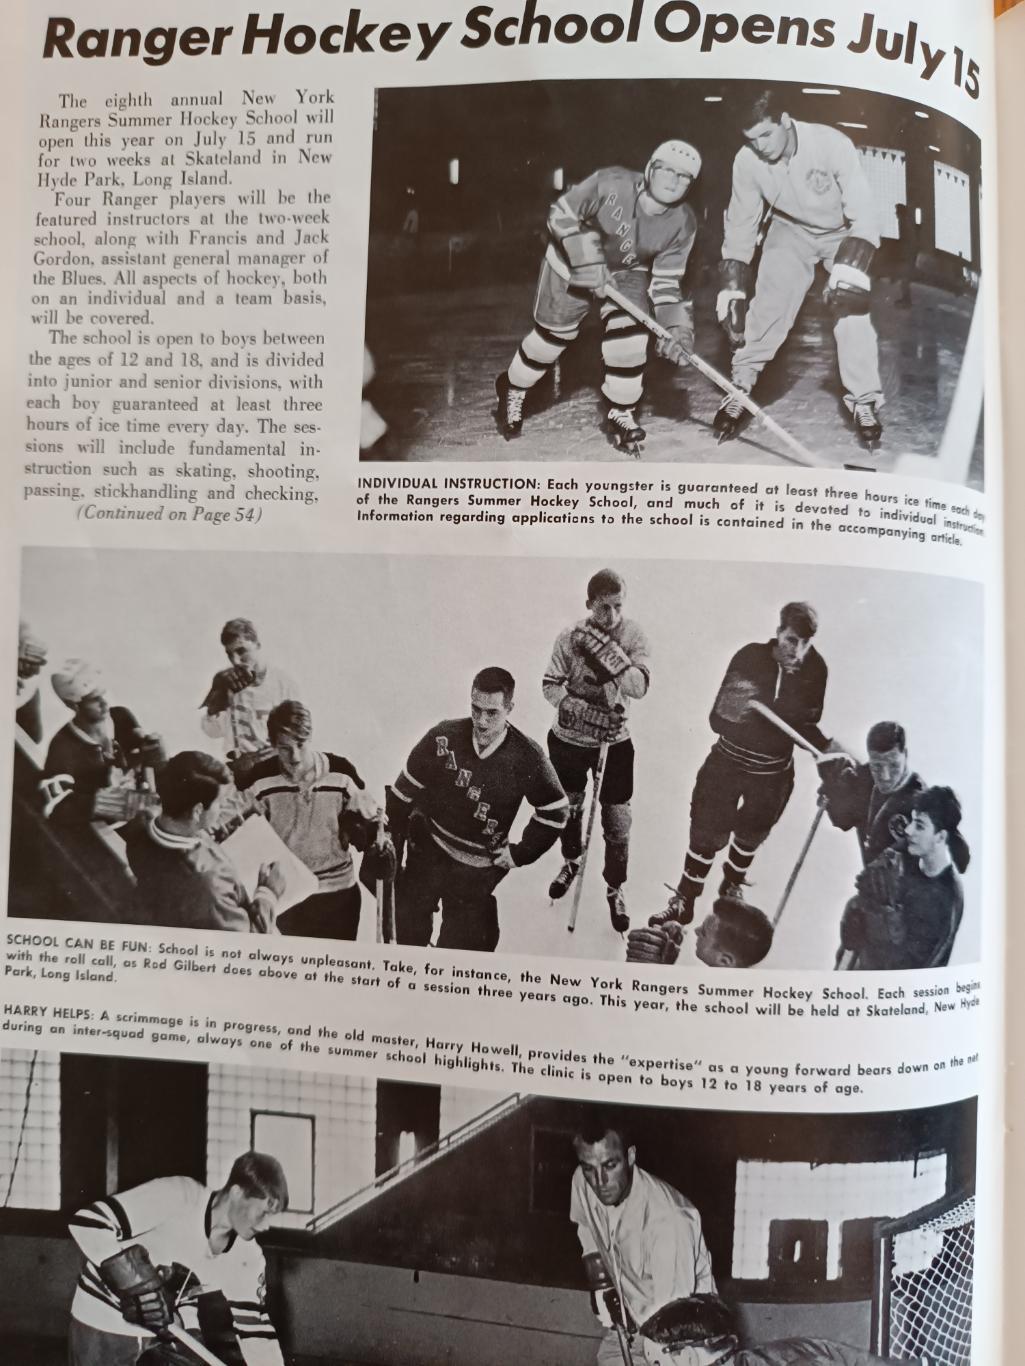 ПРОГРАММА МАТЧА НХЛ РЭЙНДЖЕРС КИНГЗ 1968 MAR.10 RANGERS VS. LA KINGS PROGRAM 5